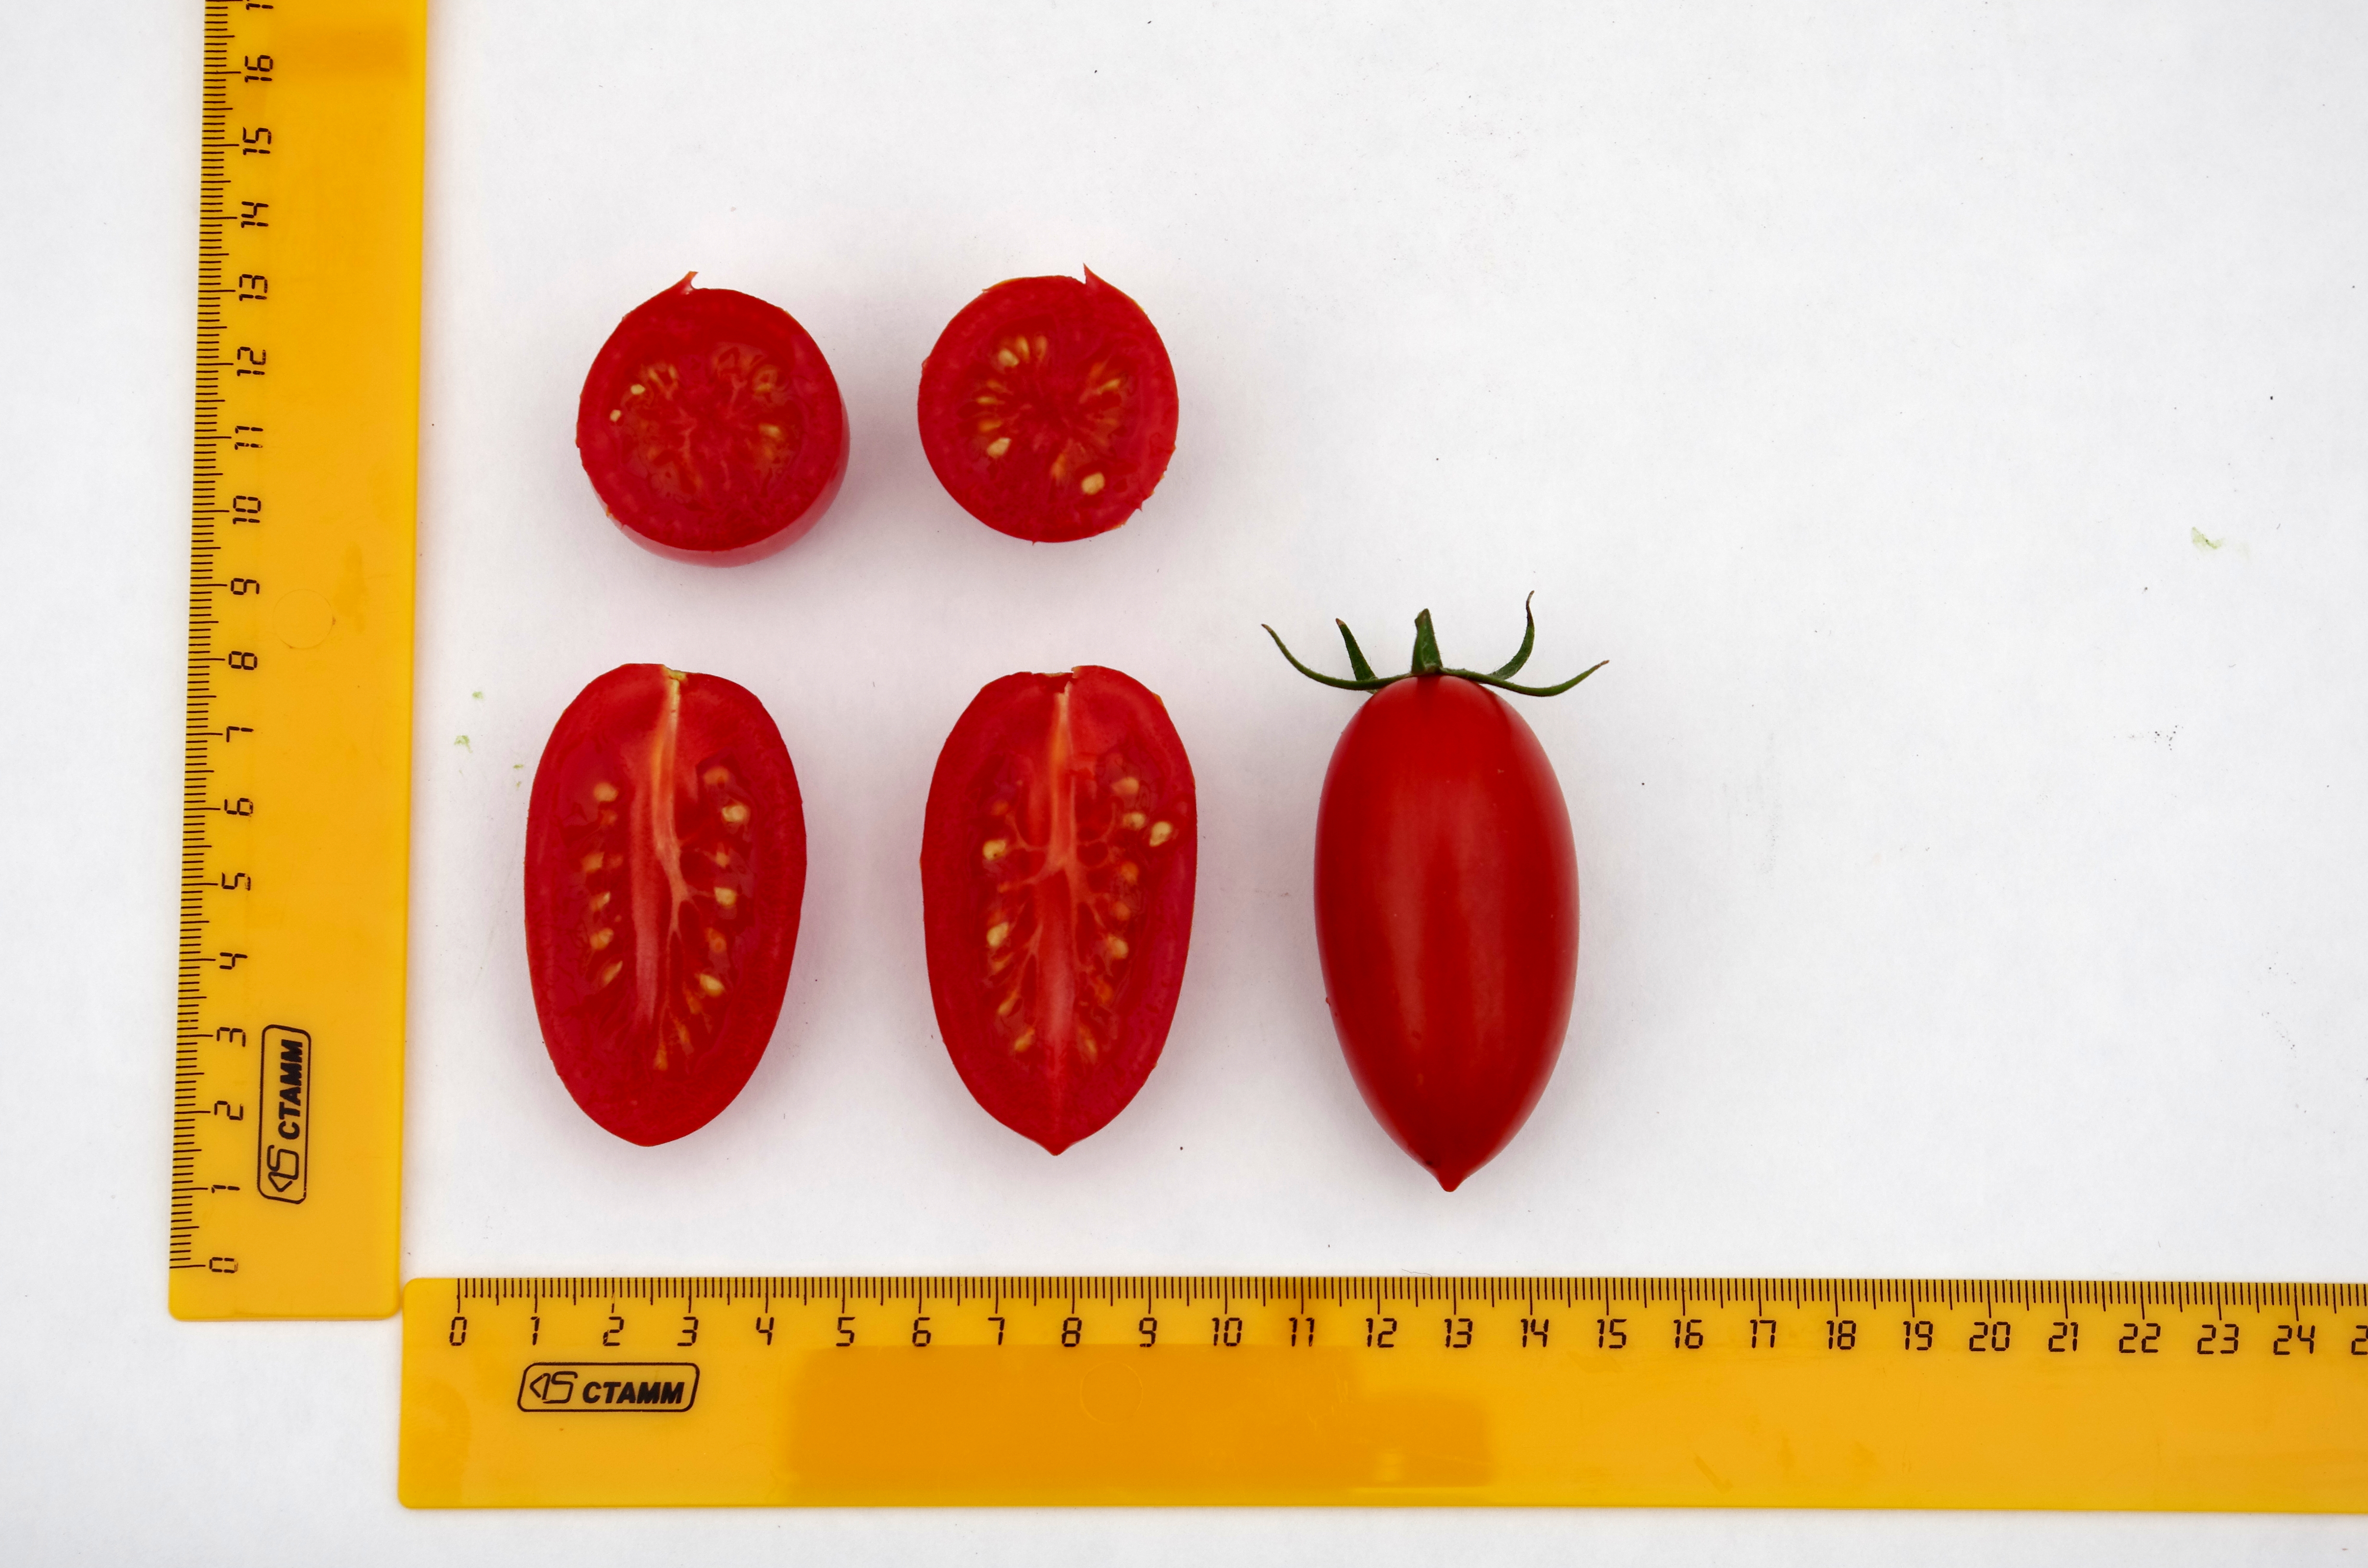 Купить семена томата джекпот в городе октябрьском топ онлайн казино на реальные деньги 2019